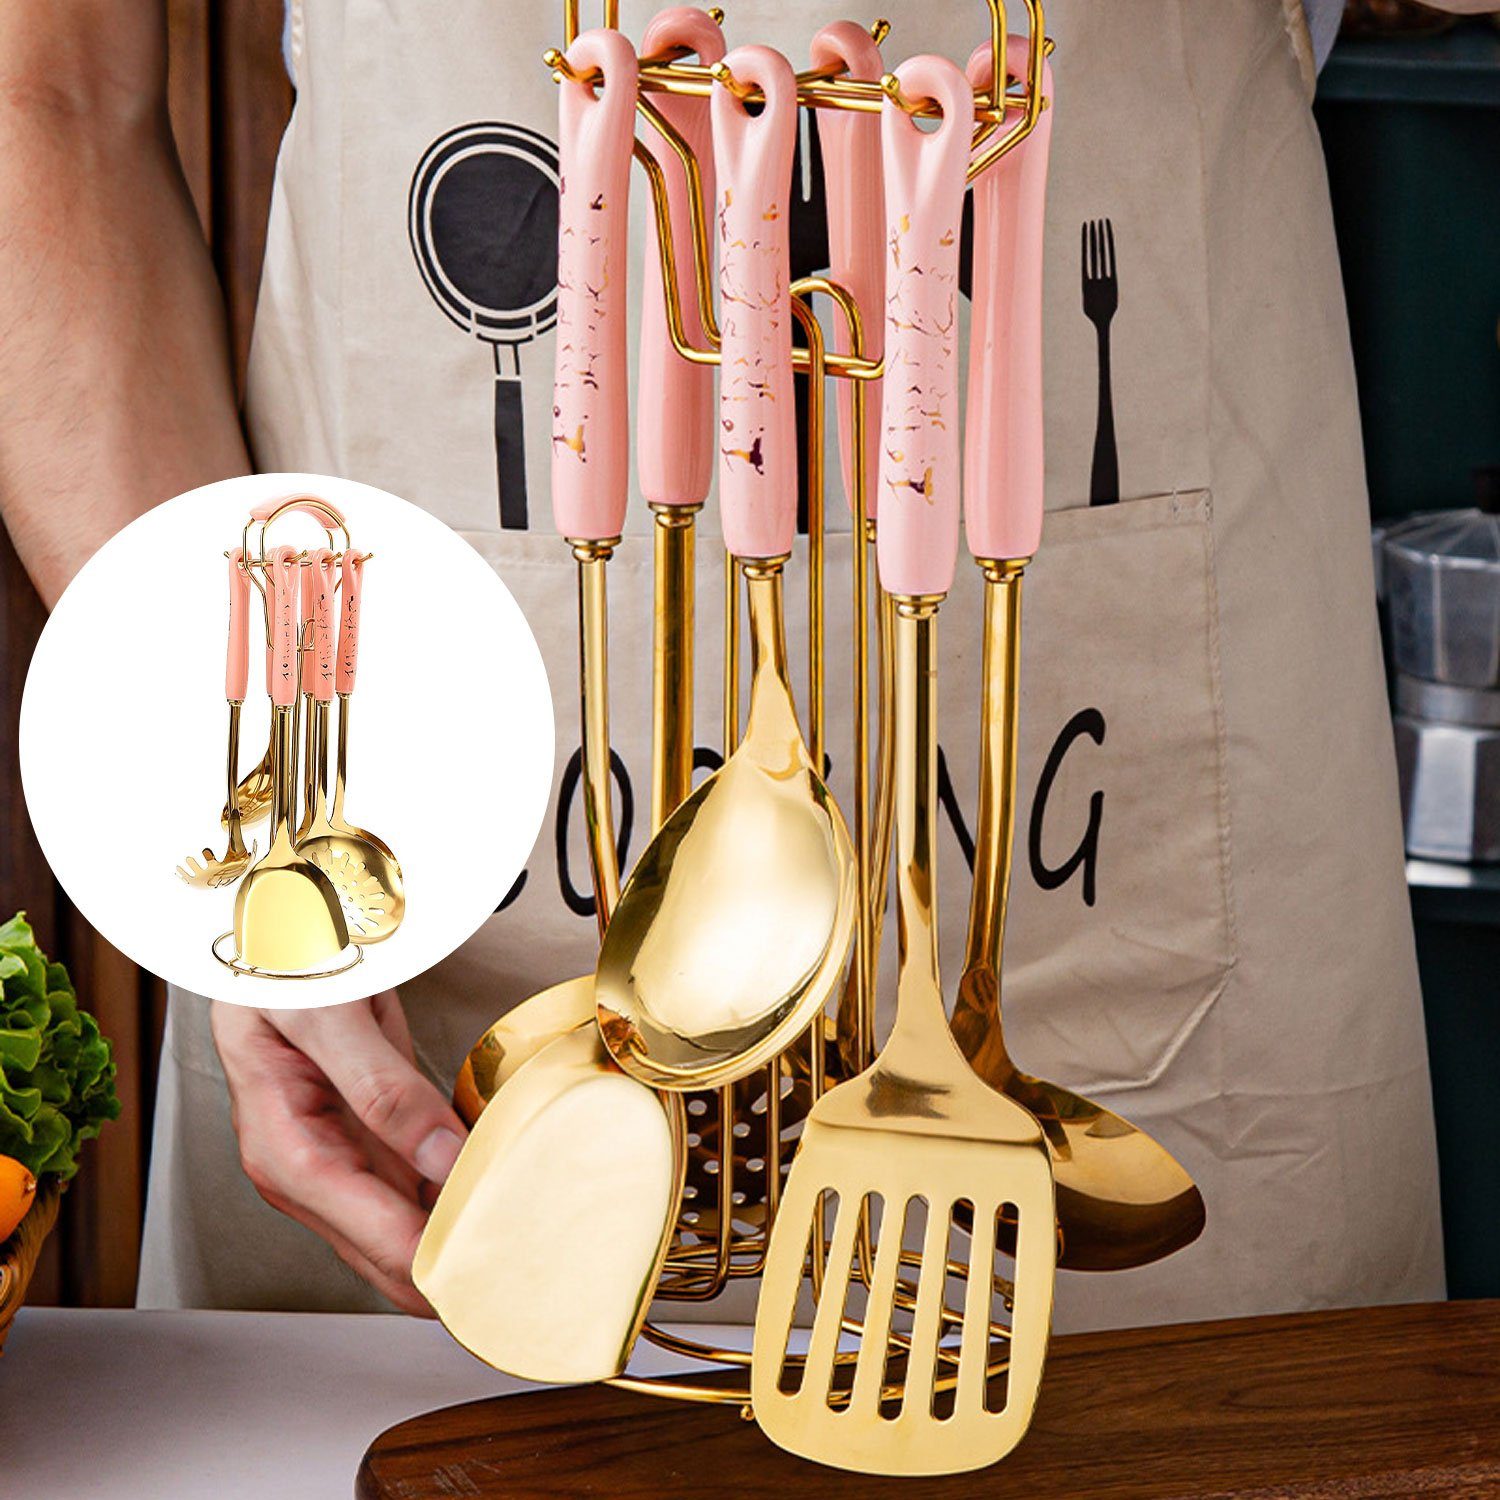 Edelstahlgriff MAGICSHE Küchenutensilien (7-tlg), Set 7er Non-Stick Set mit Edelstahl Kochbesteck-Set Keramik Rosa